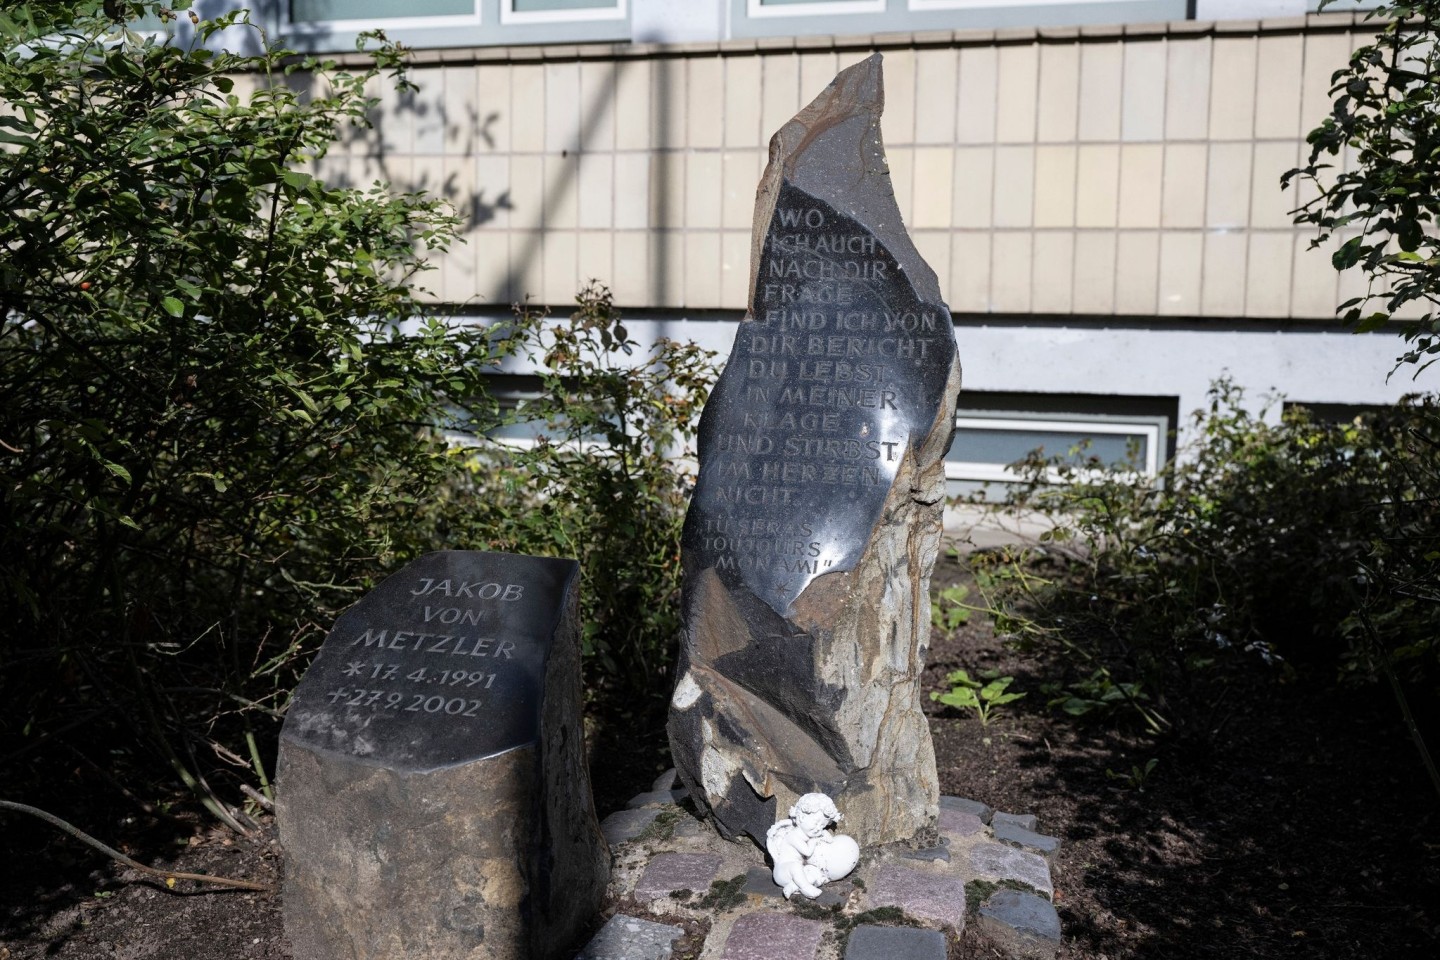 Der Gedenkstein für den ermordeten Jakob von Metzler an dessen ehemaliger Schule in Frankfurt-Sachsenhausen.